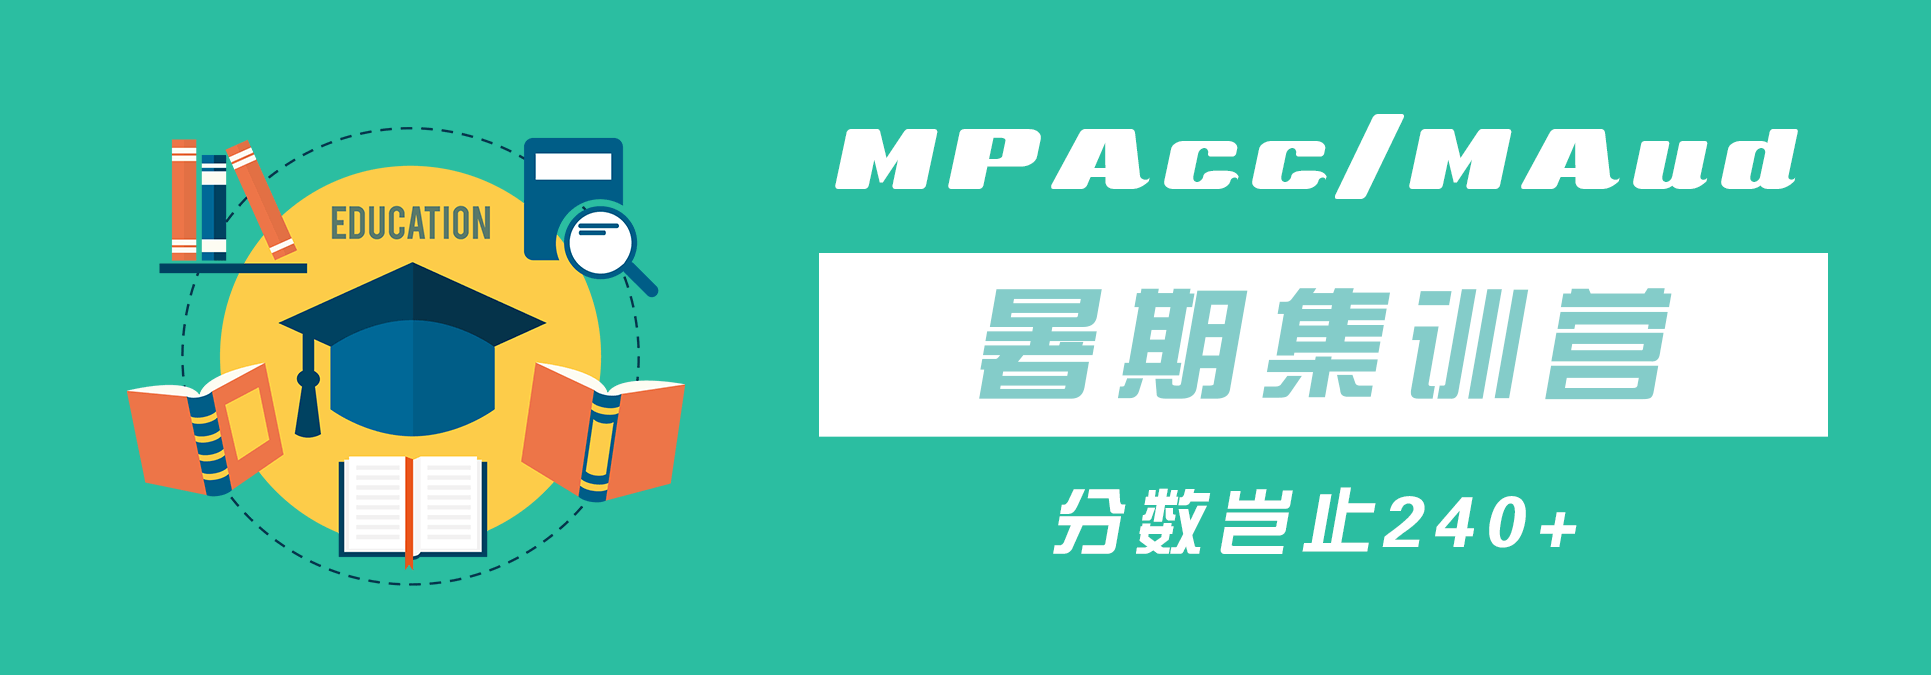 杭州太奇MPAcc/MAud暑期集训营